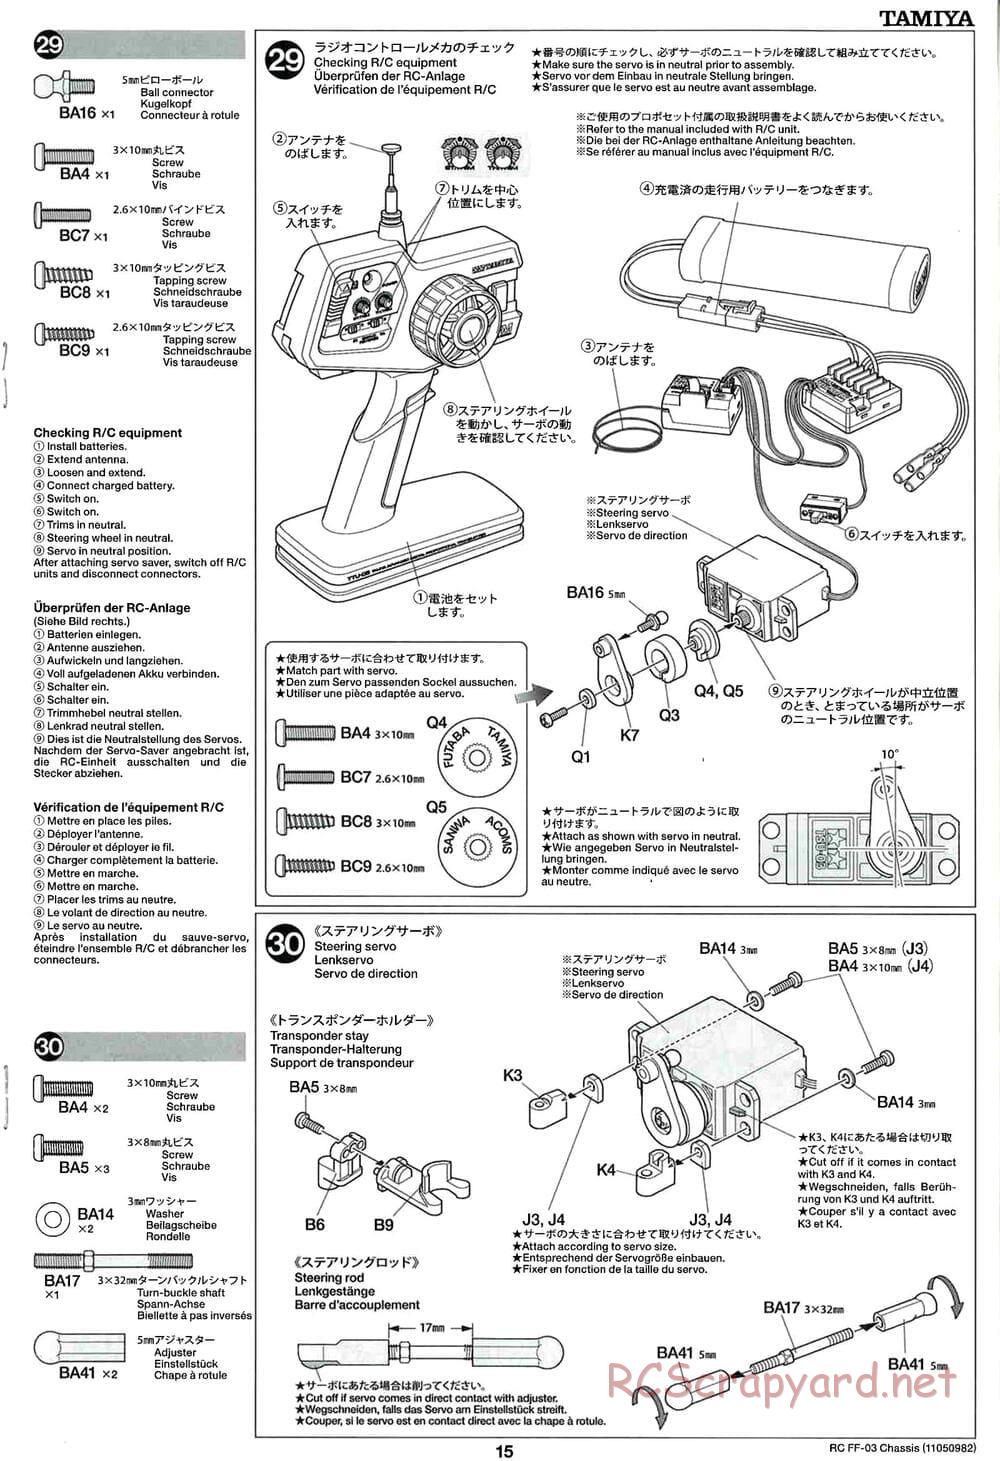 Tamiya - Castrol Honda Civic VTi - FF-03 Chassis - Manual - Page 15